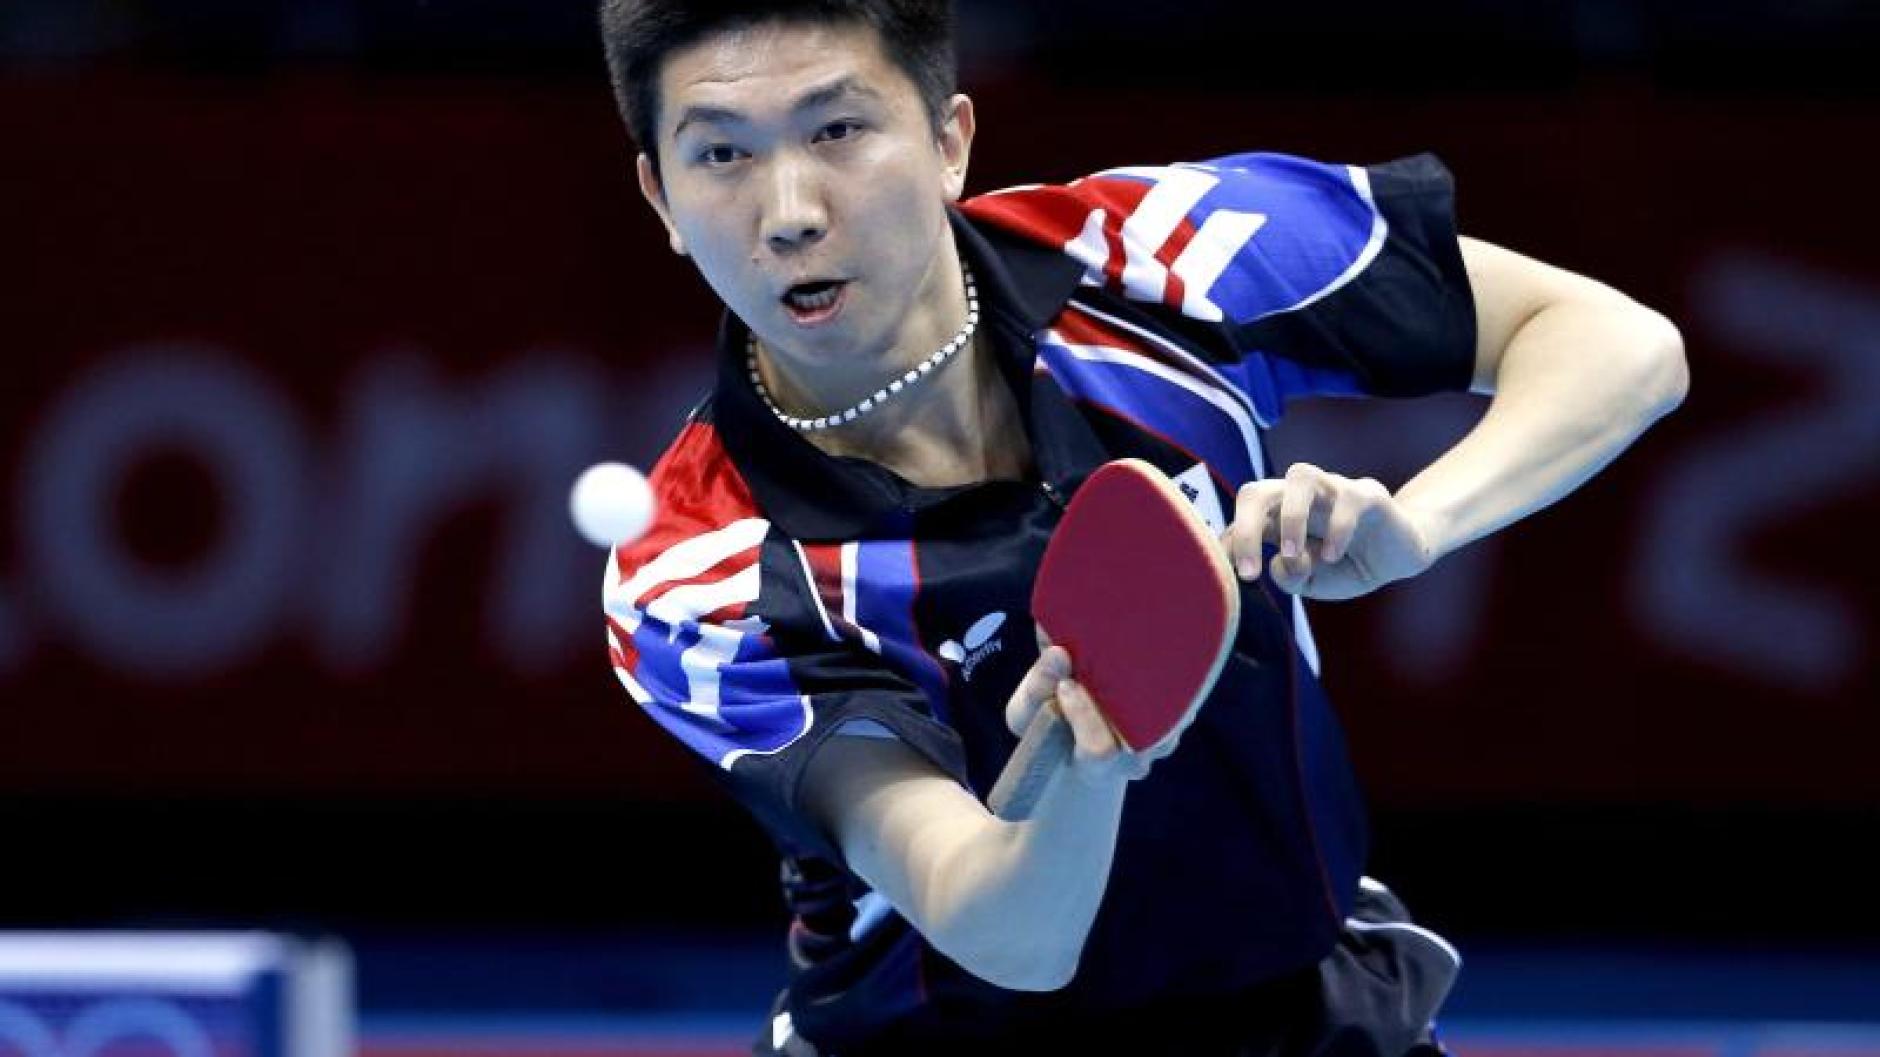 Tischtennis: Tischtennis-Olympiasieger Ryu bleibt in ...